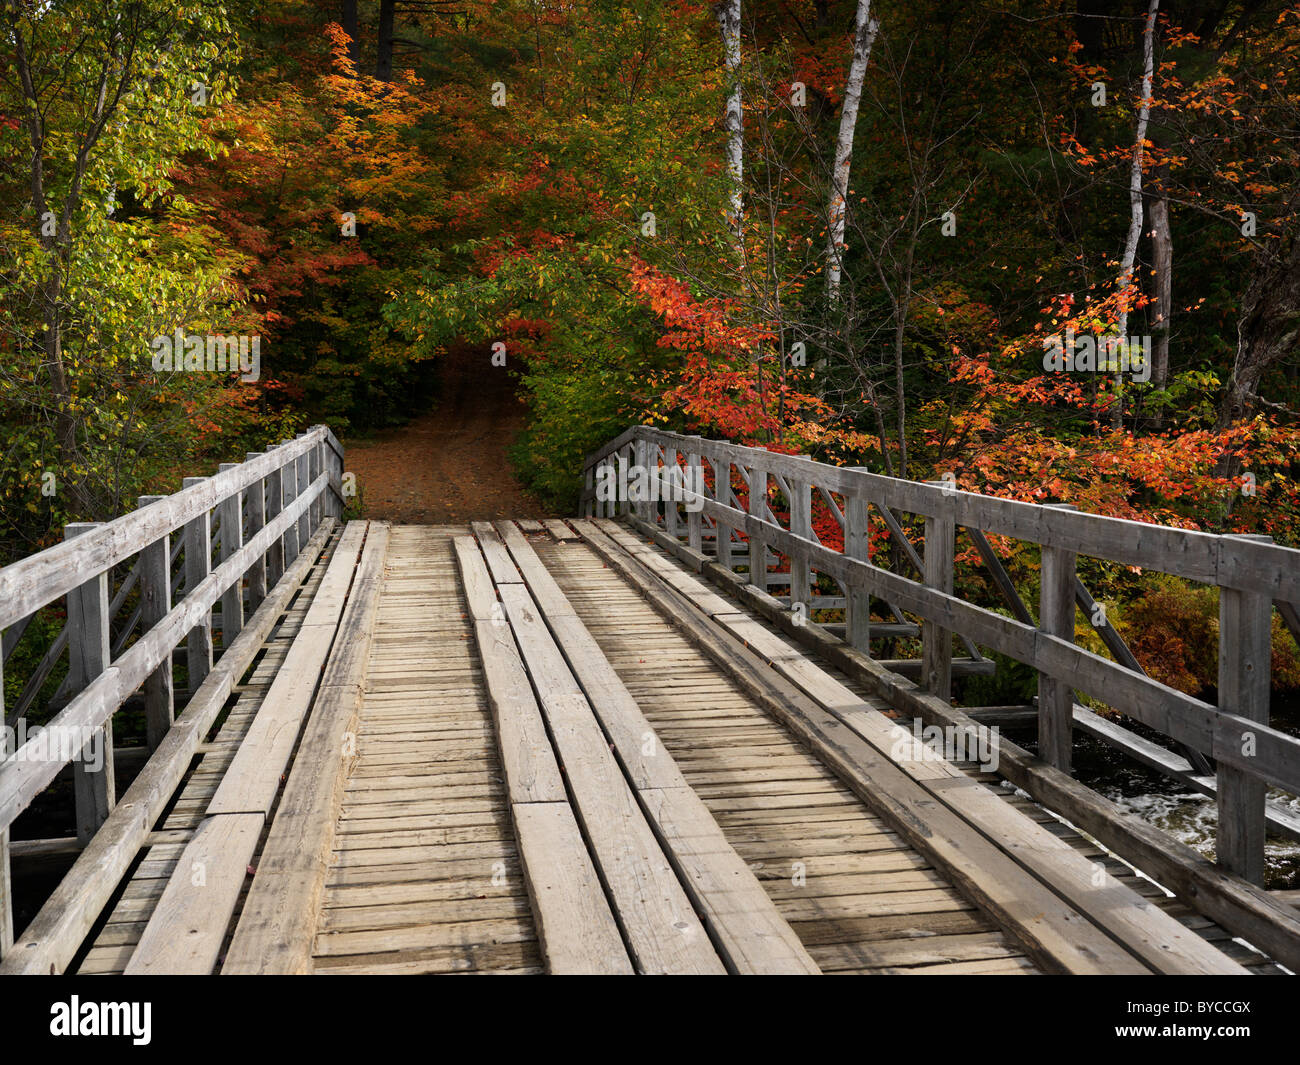 Pont de bois sur une rivière. Campagne automne nature paysage. La rivière Oxtongue, Algonquin, Muskoka, Ontario, Canada. Banque D'Images